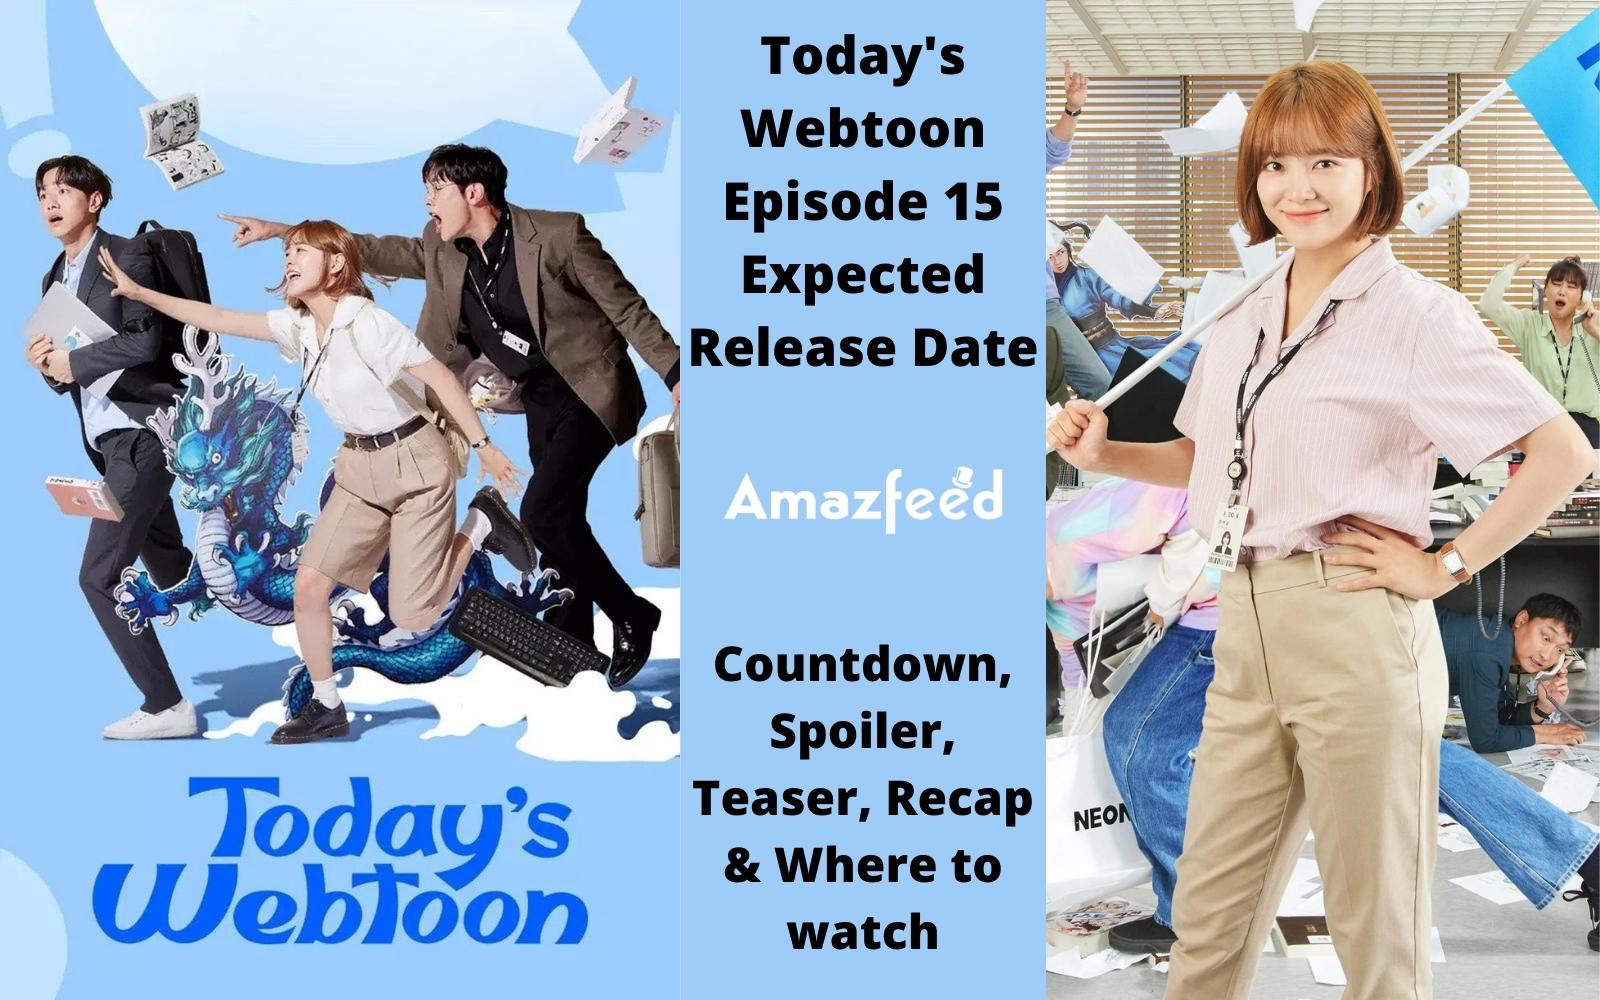 Today's Webtoon Episode 15 : Release Date, Countdown, Spoiler, Teaser, Recap & Where to watch